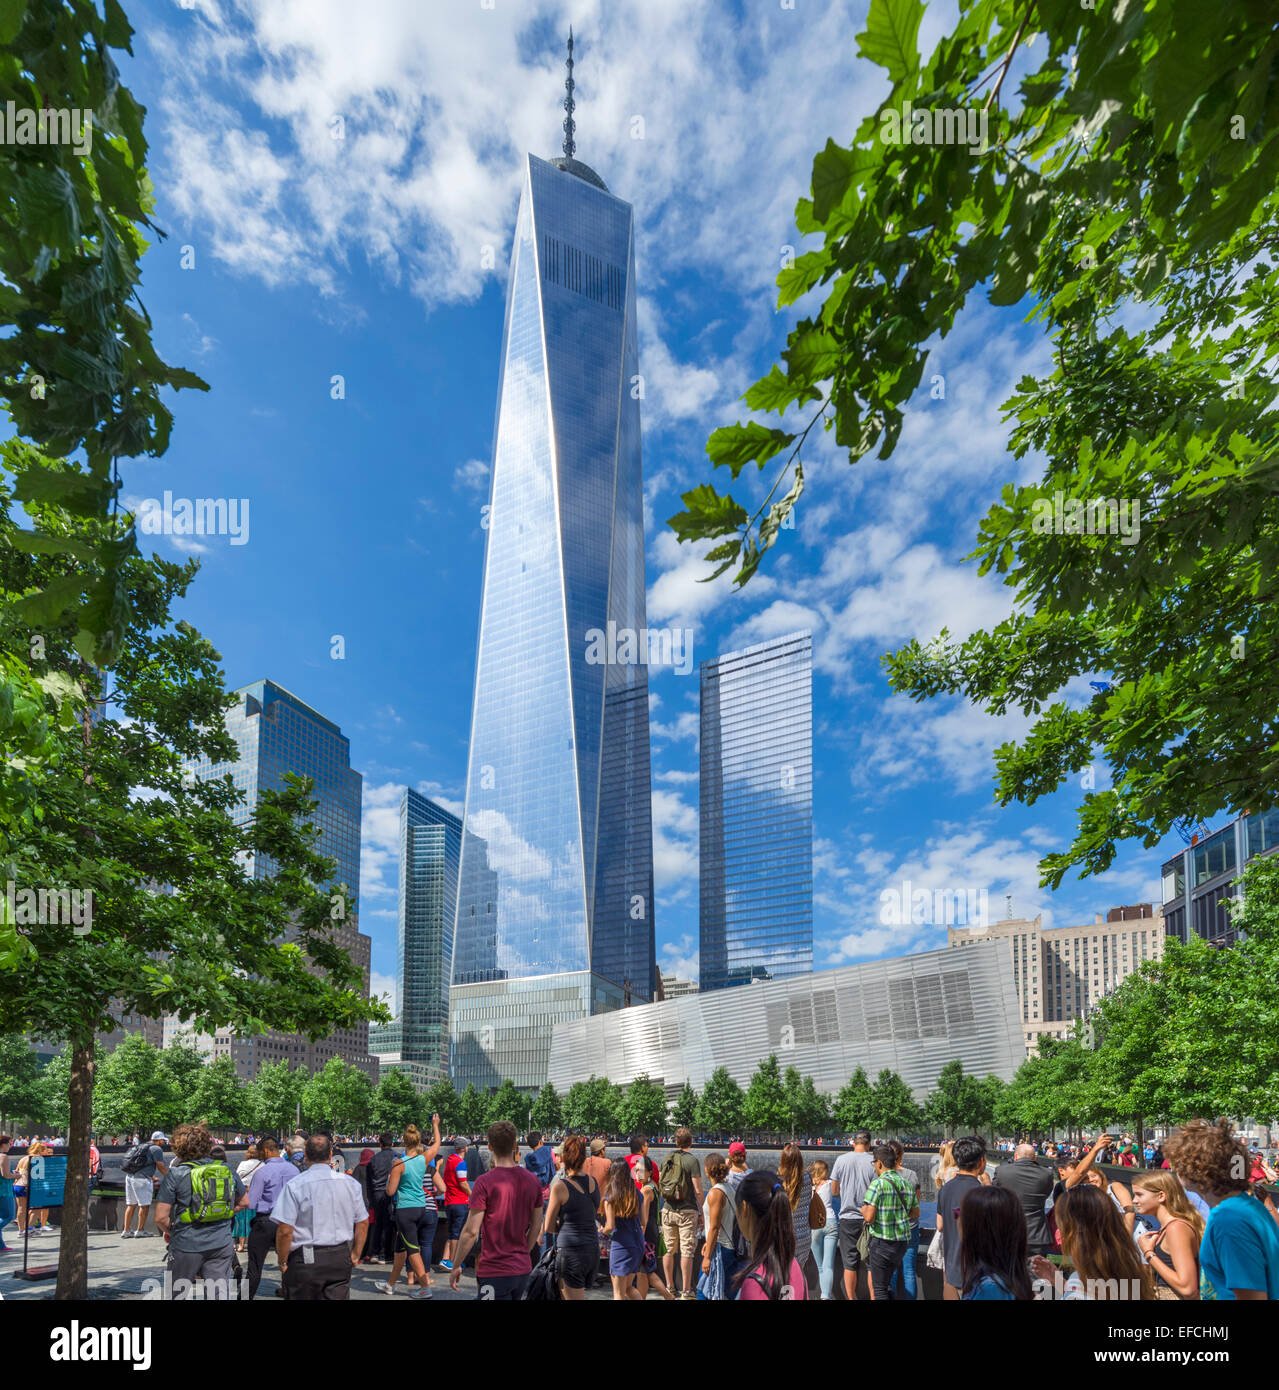 Les visiteurs autour de la piscine du sud du Mémorial National du 11 septembre avec One World Trade Center derrière, NYC, New York, NY, USA Banque D'Images